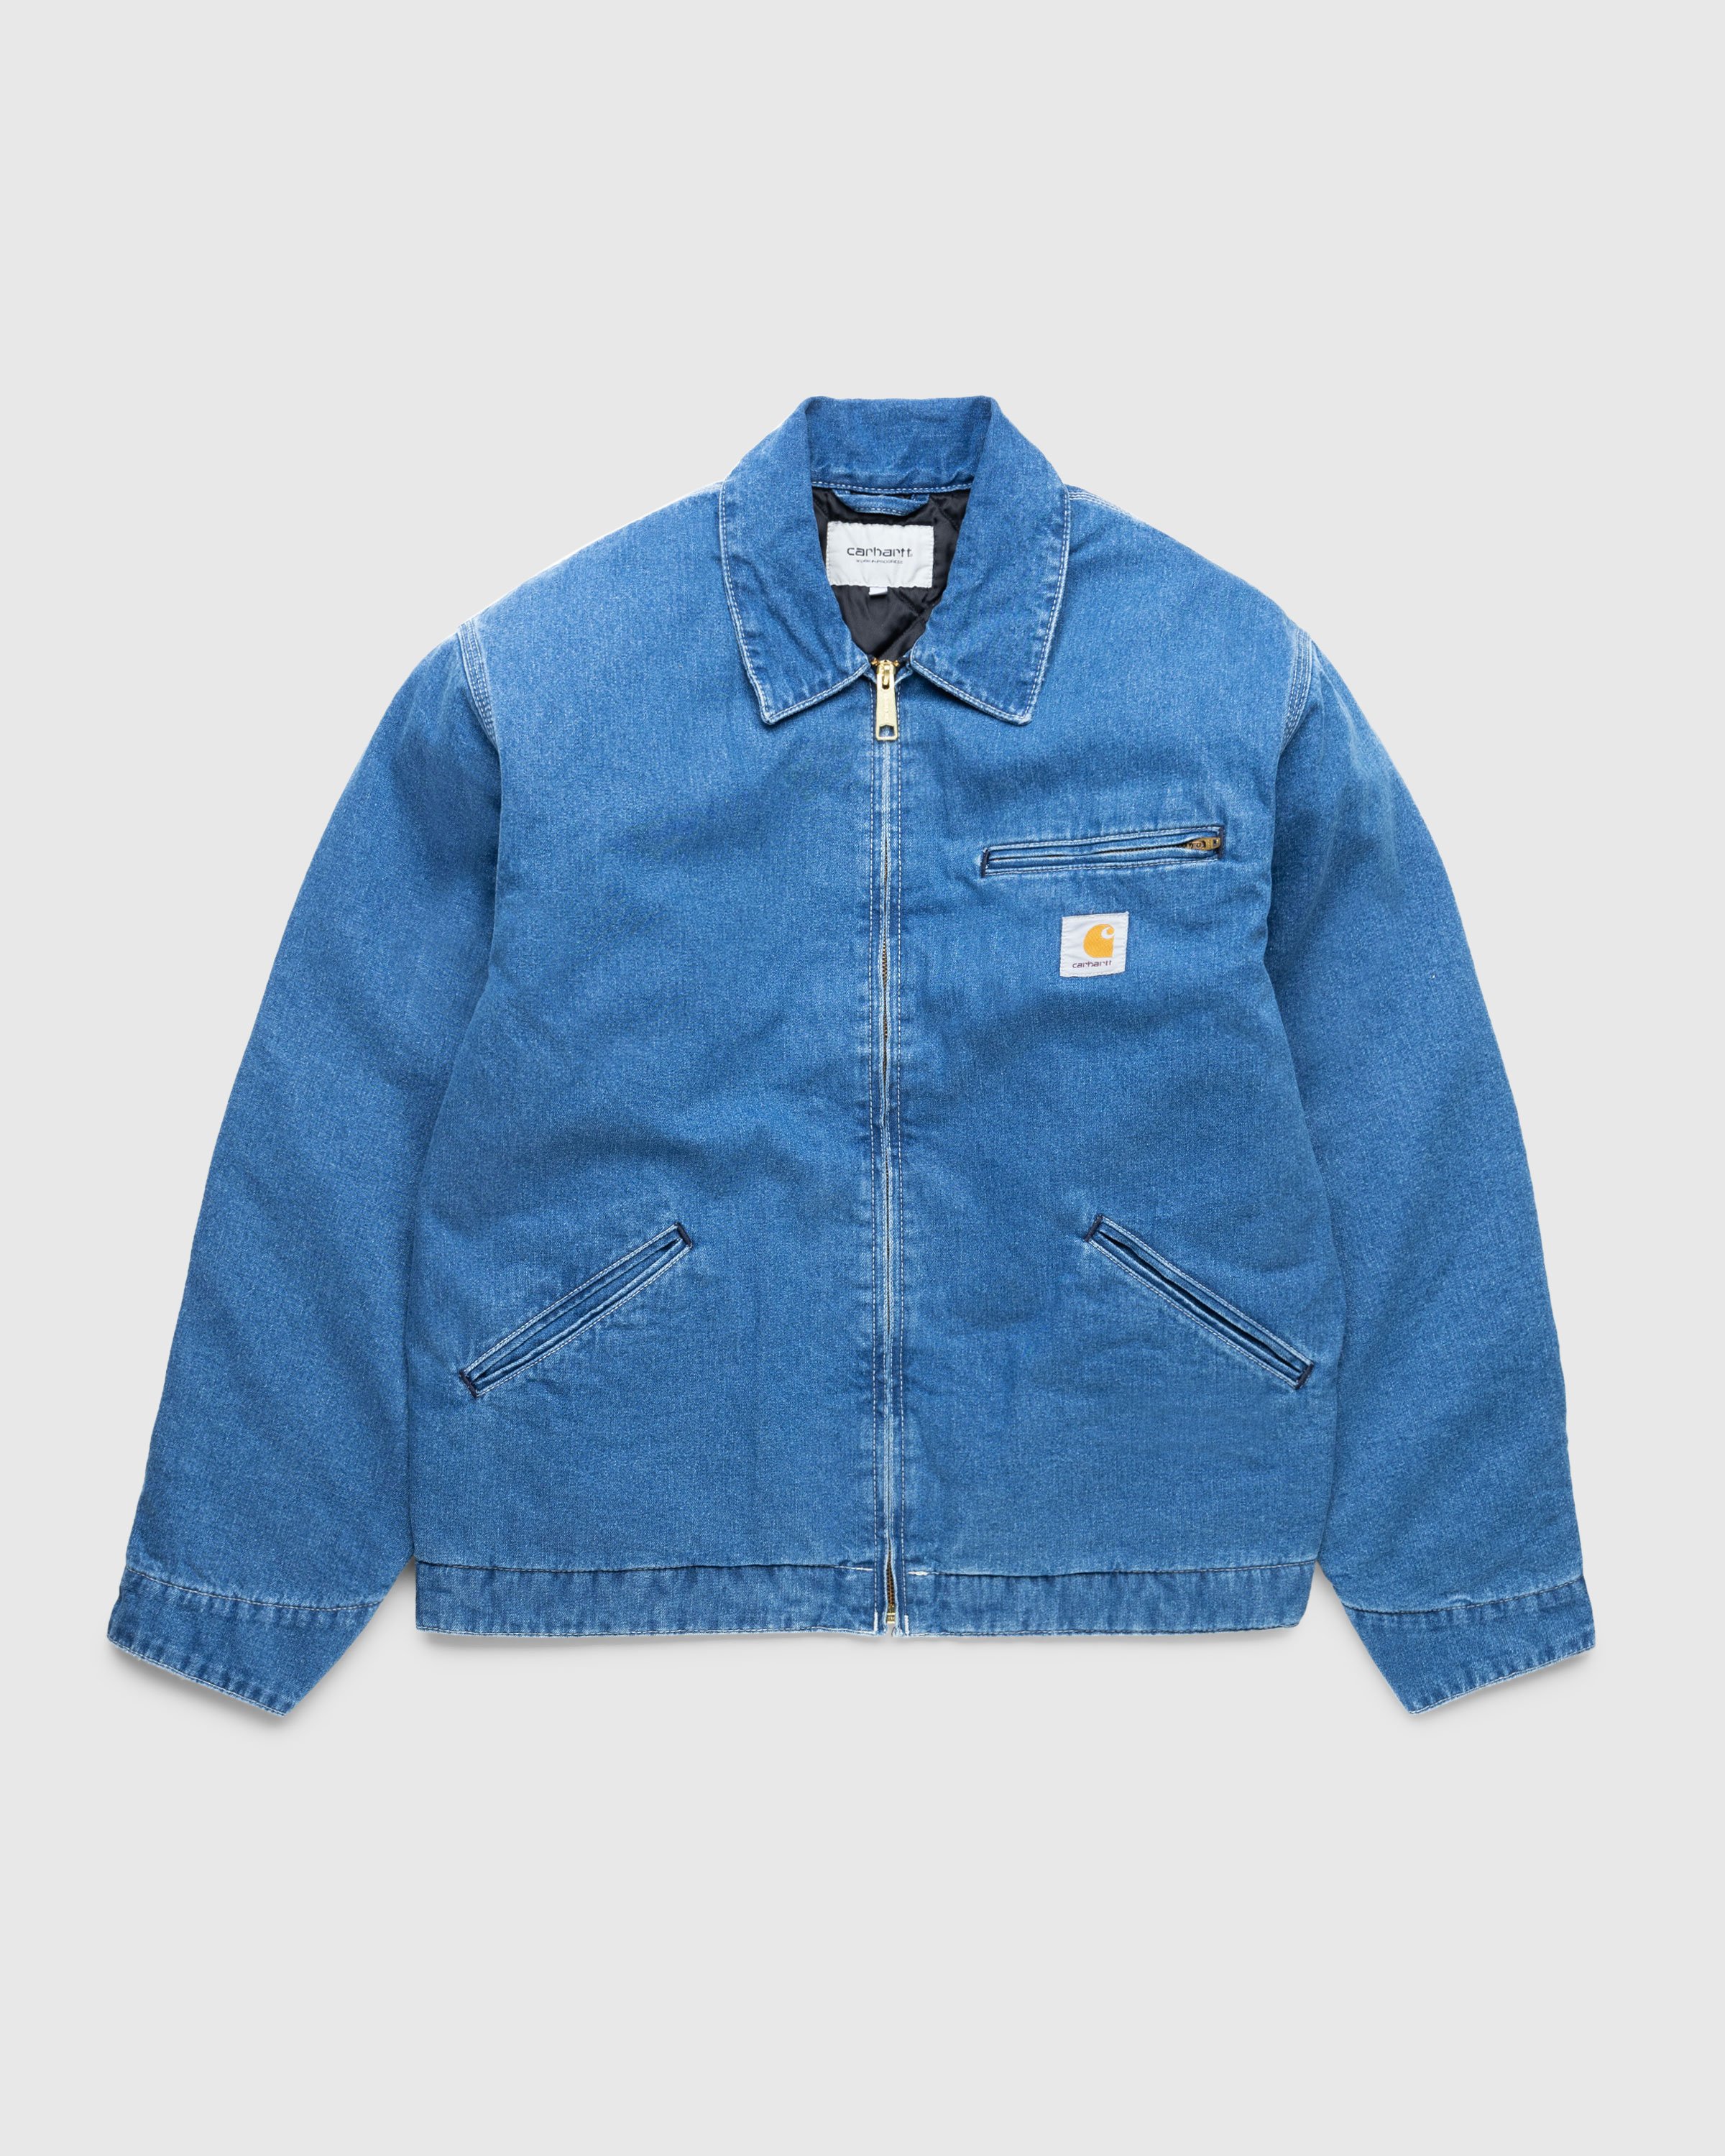 Carhartt WIP - OG Detroit Jacket Blue/Stone Washed - Clothing - Blue - Image 1